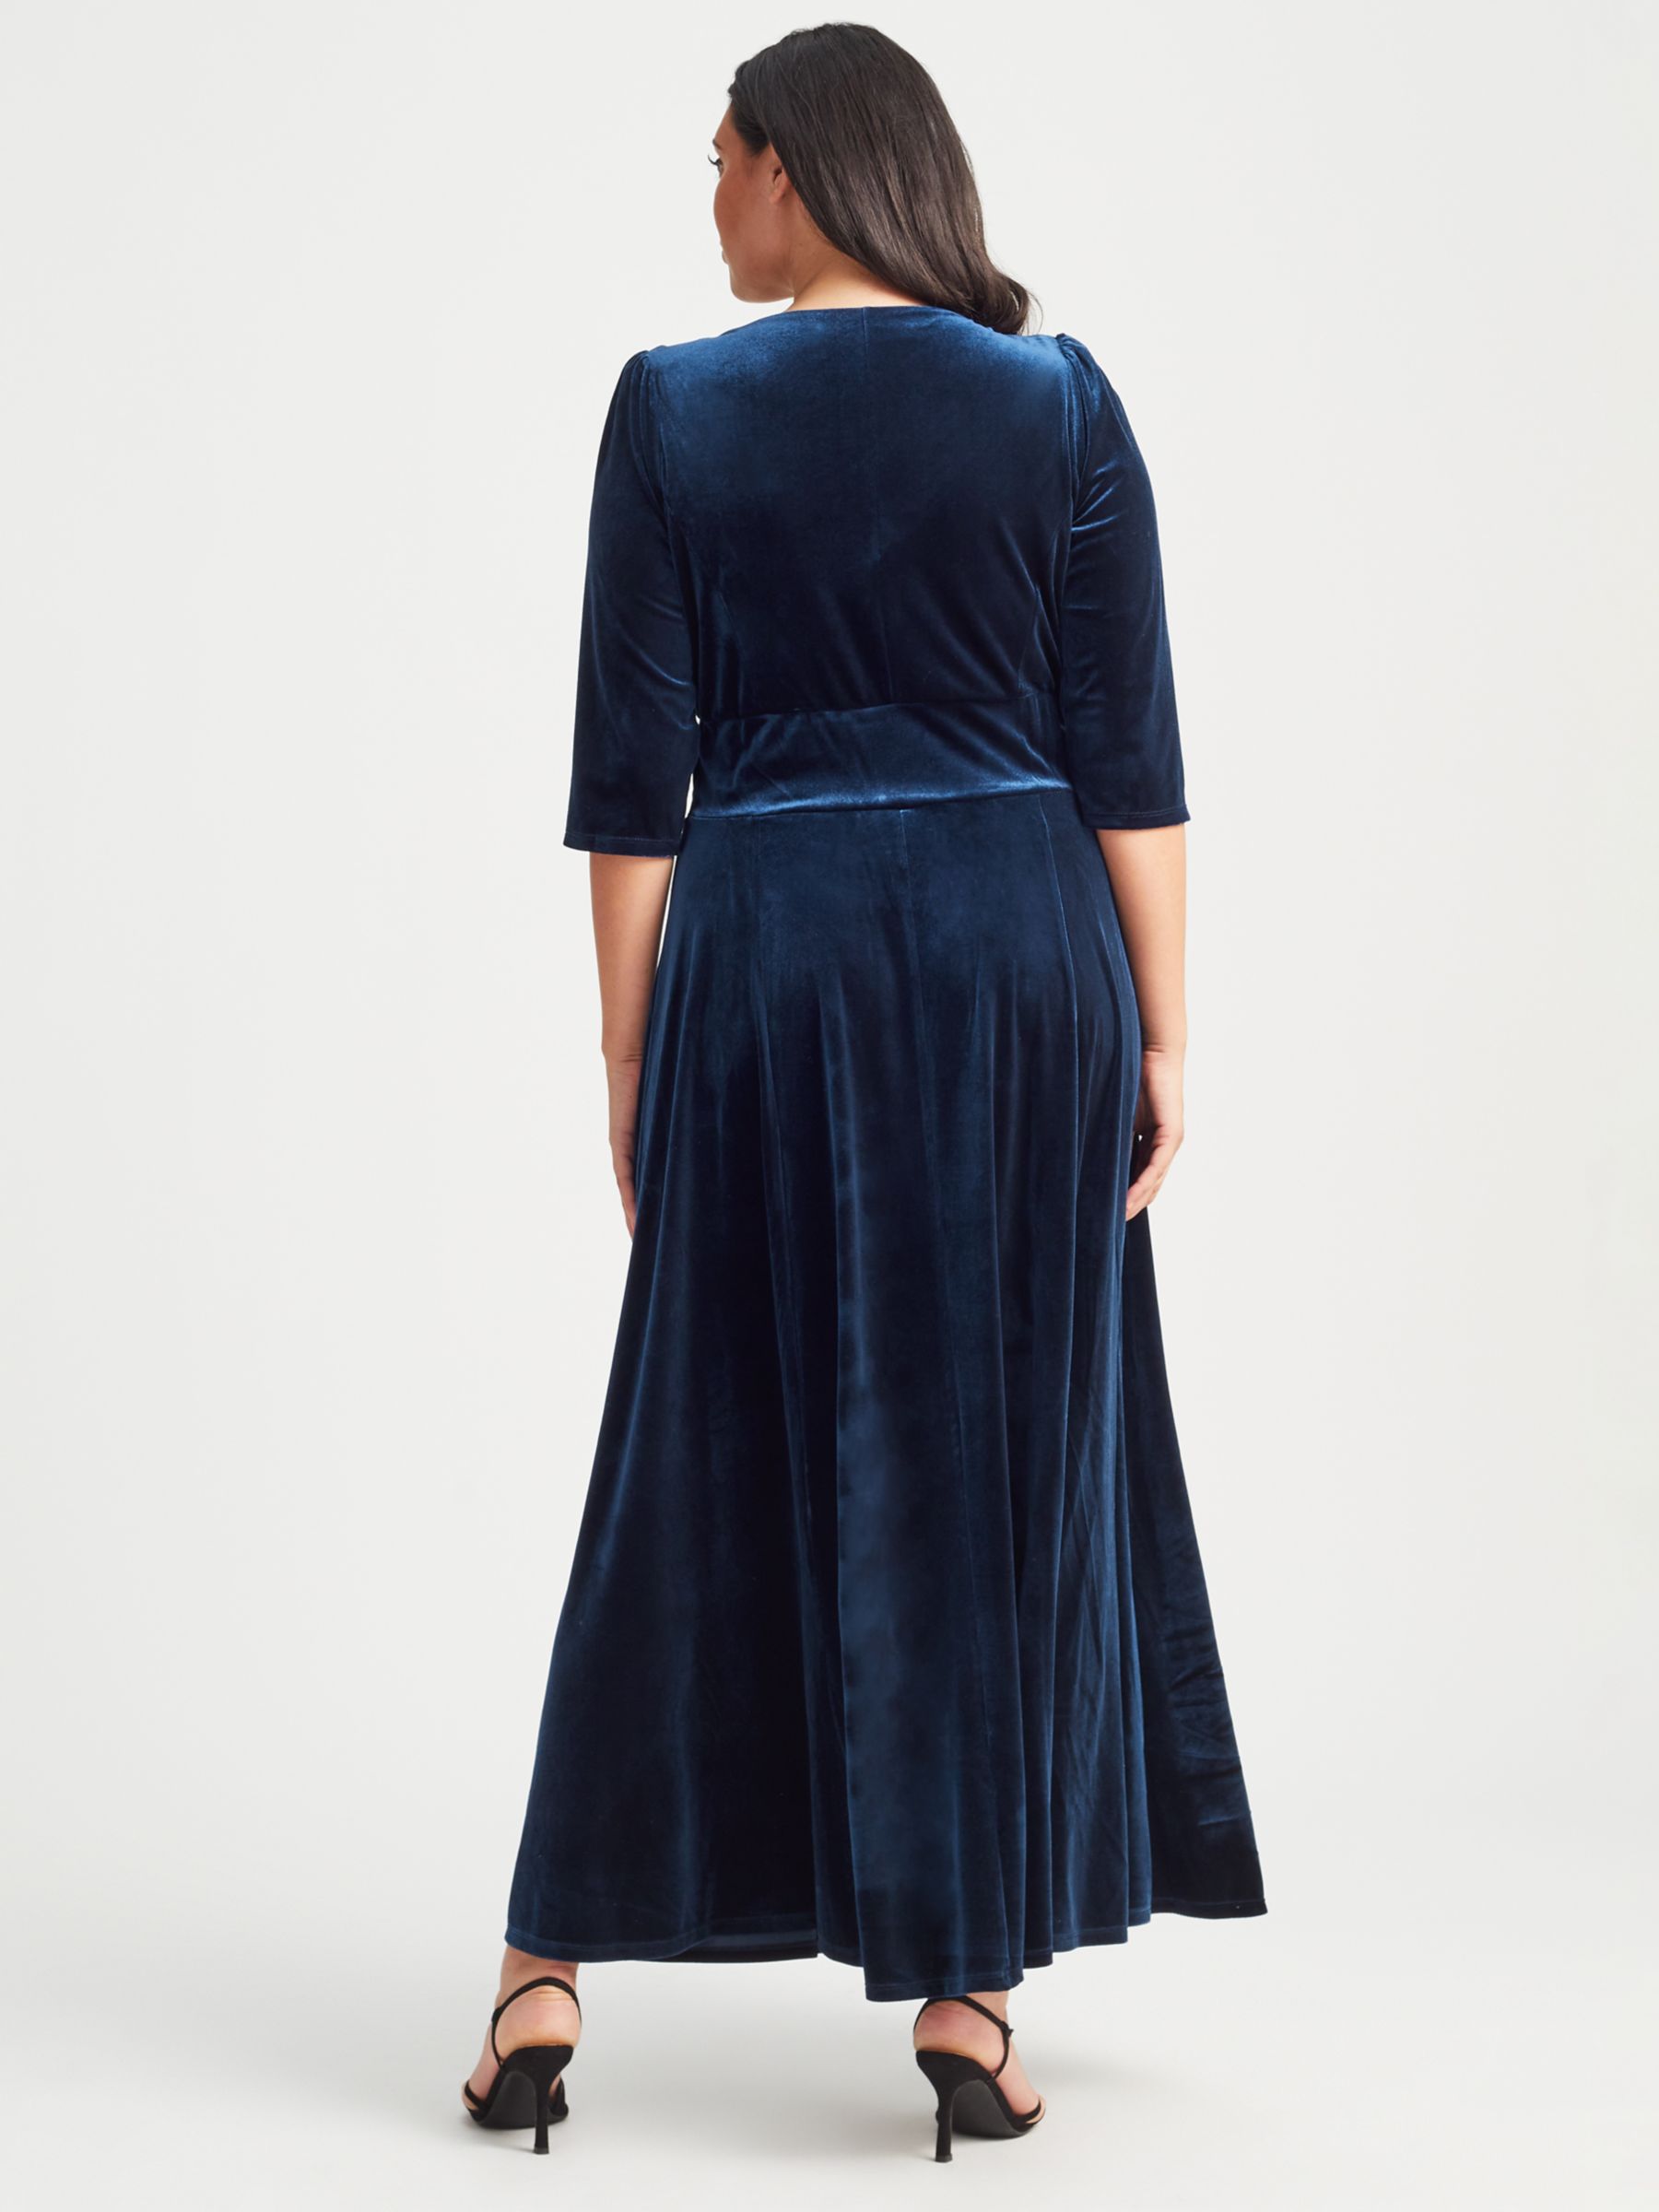 Scarlett & Jo Velvet Maxi Dress, Blue at John Lewis & Partners